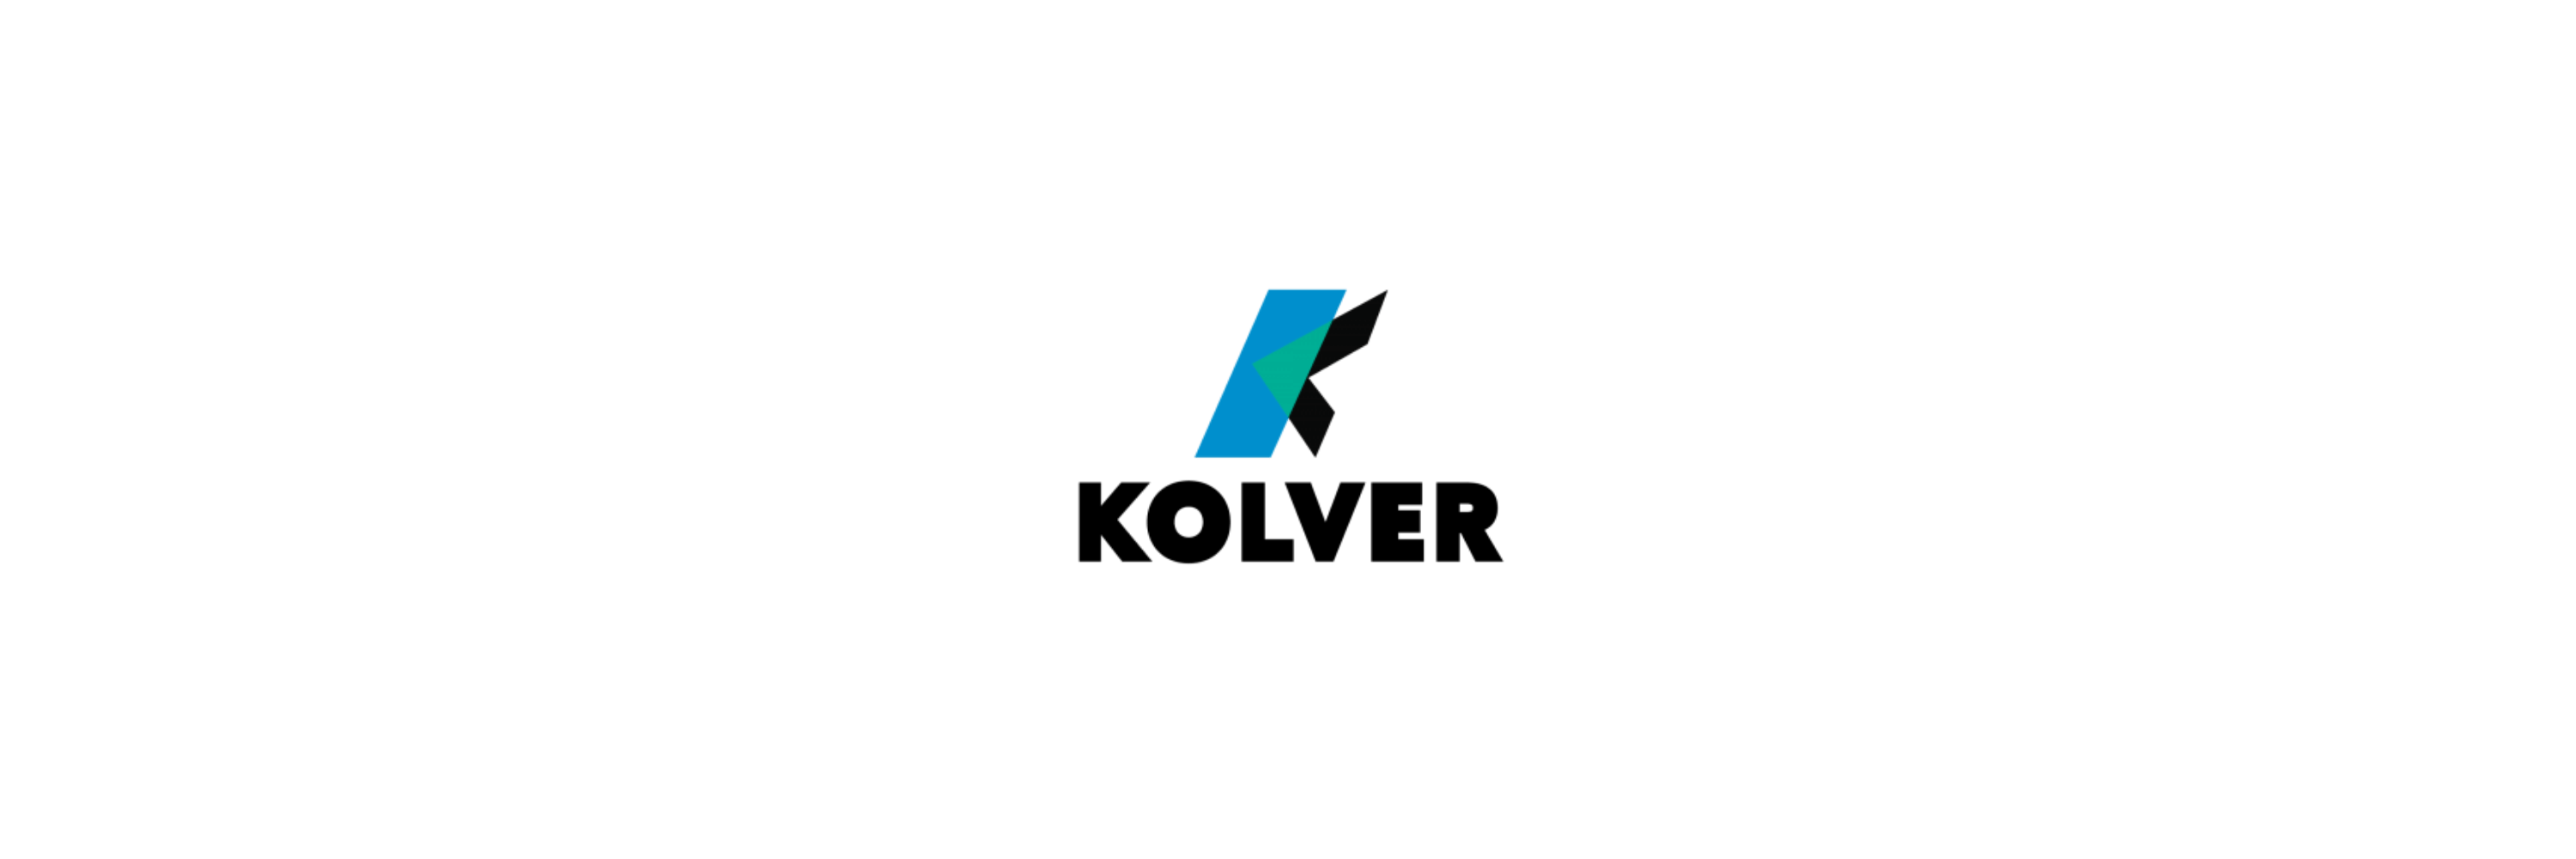 Kolver - Klenk Maschinenhandel